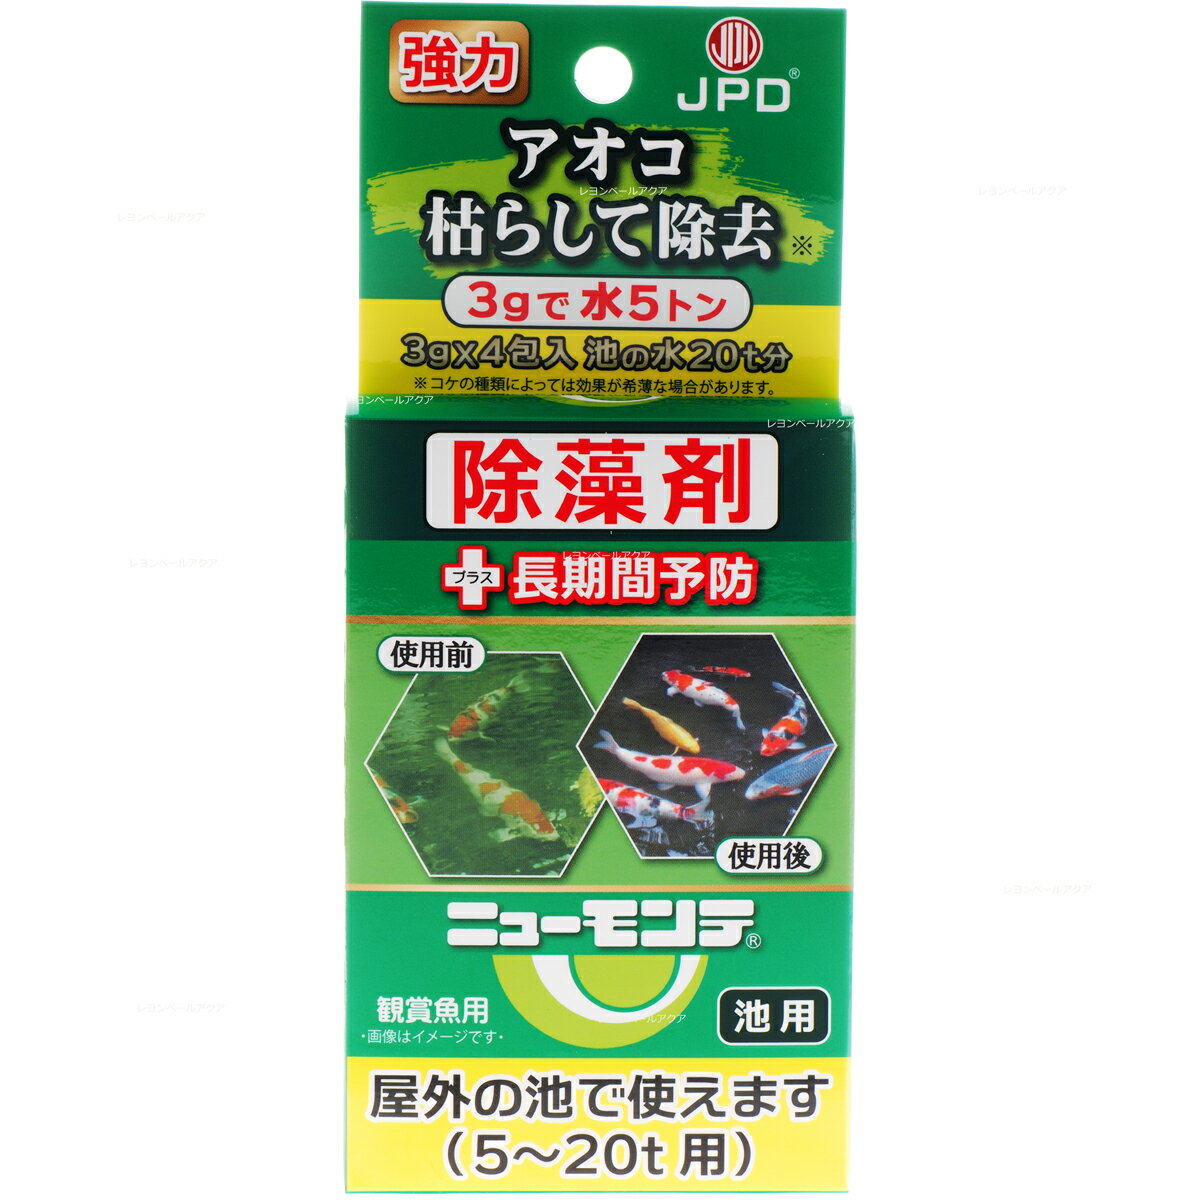 【全国送料無料】日本動物薬品 池用除藻剤ニューモンテ3g4包入 5-20トン池用 まとめ有 